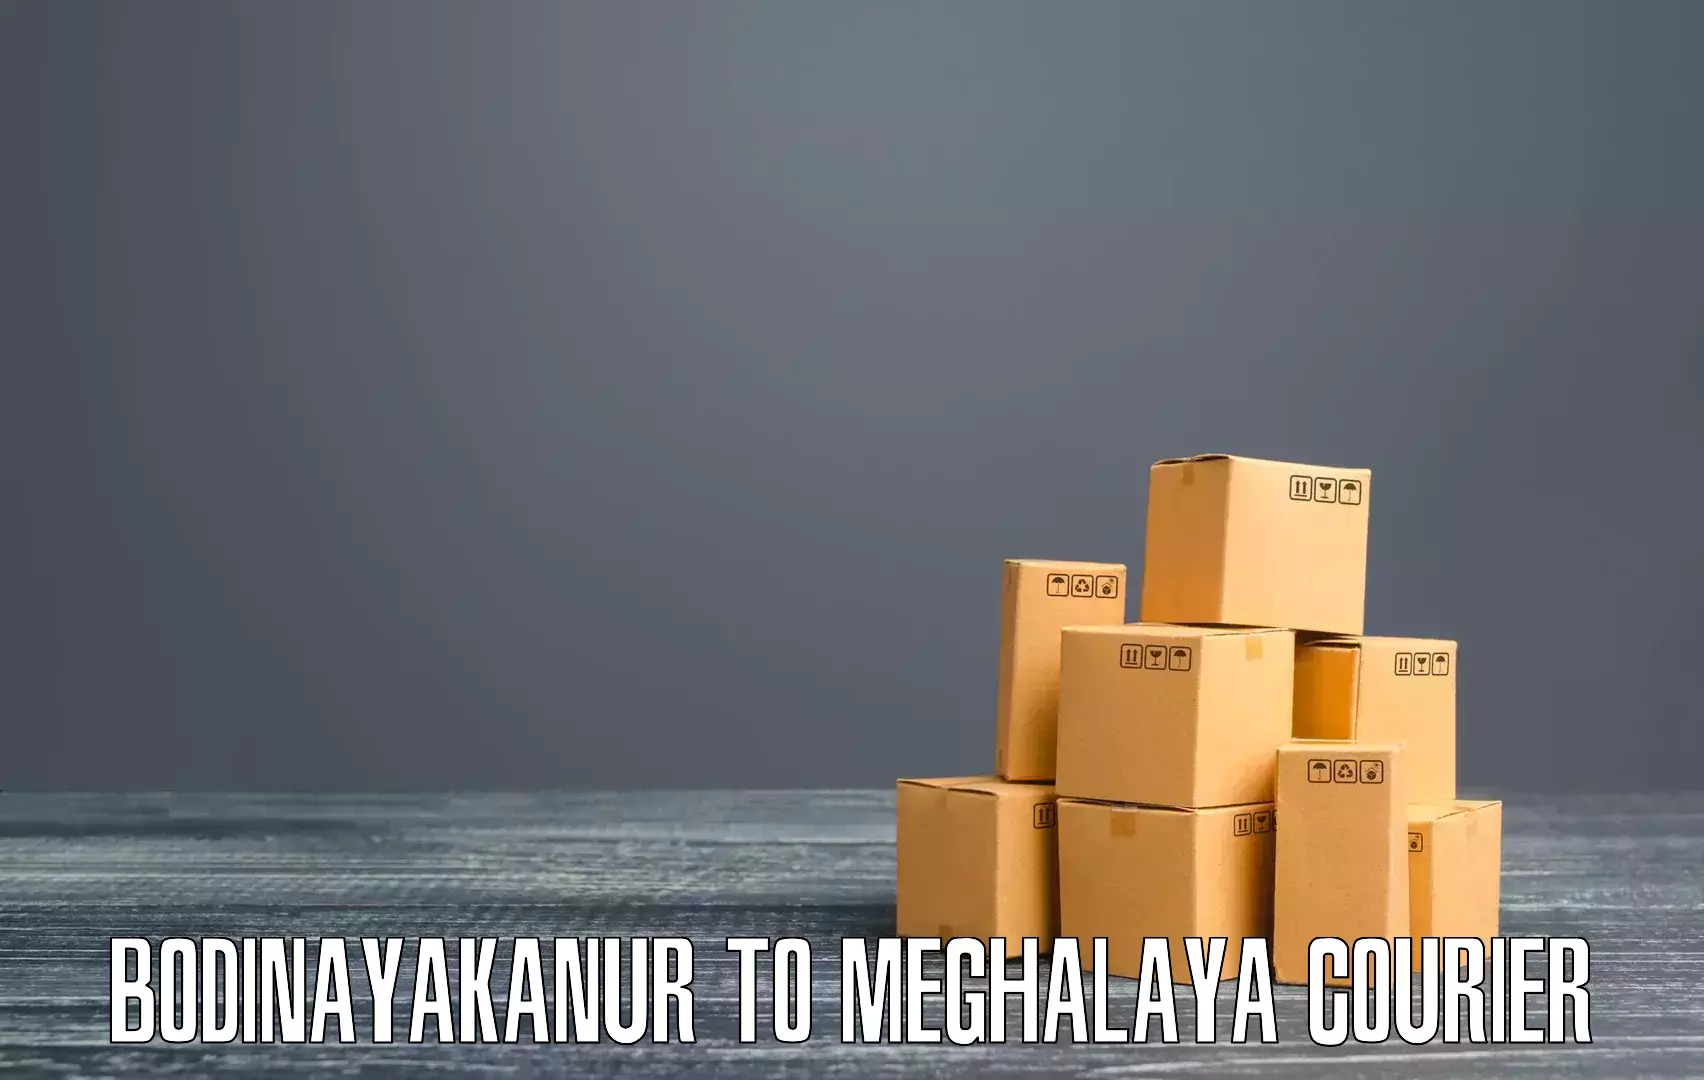 Budget-friendly shipping Bodinayakanur to Garobadha